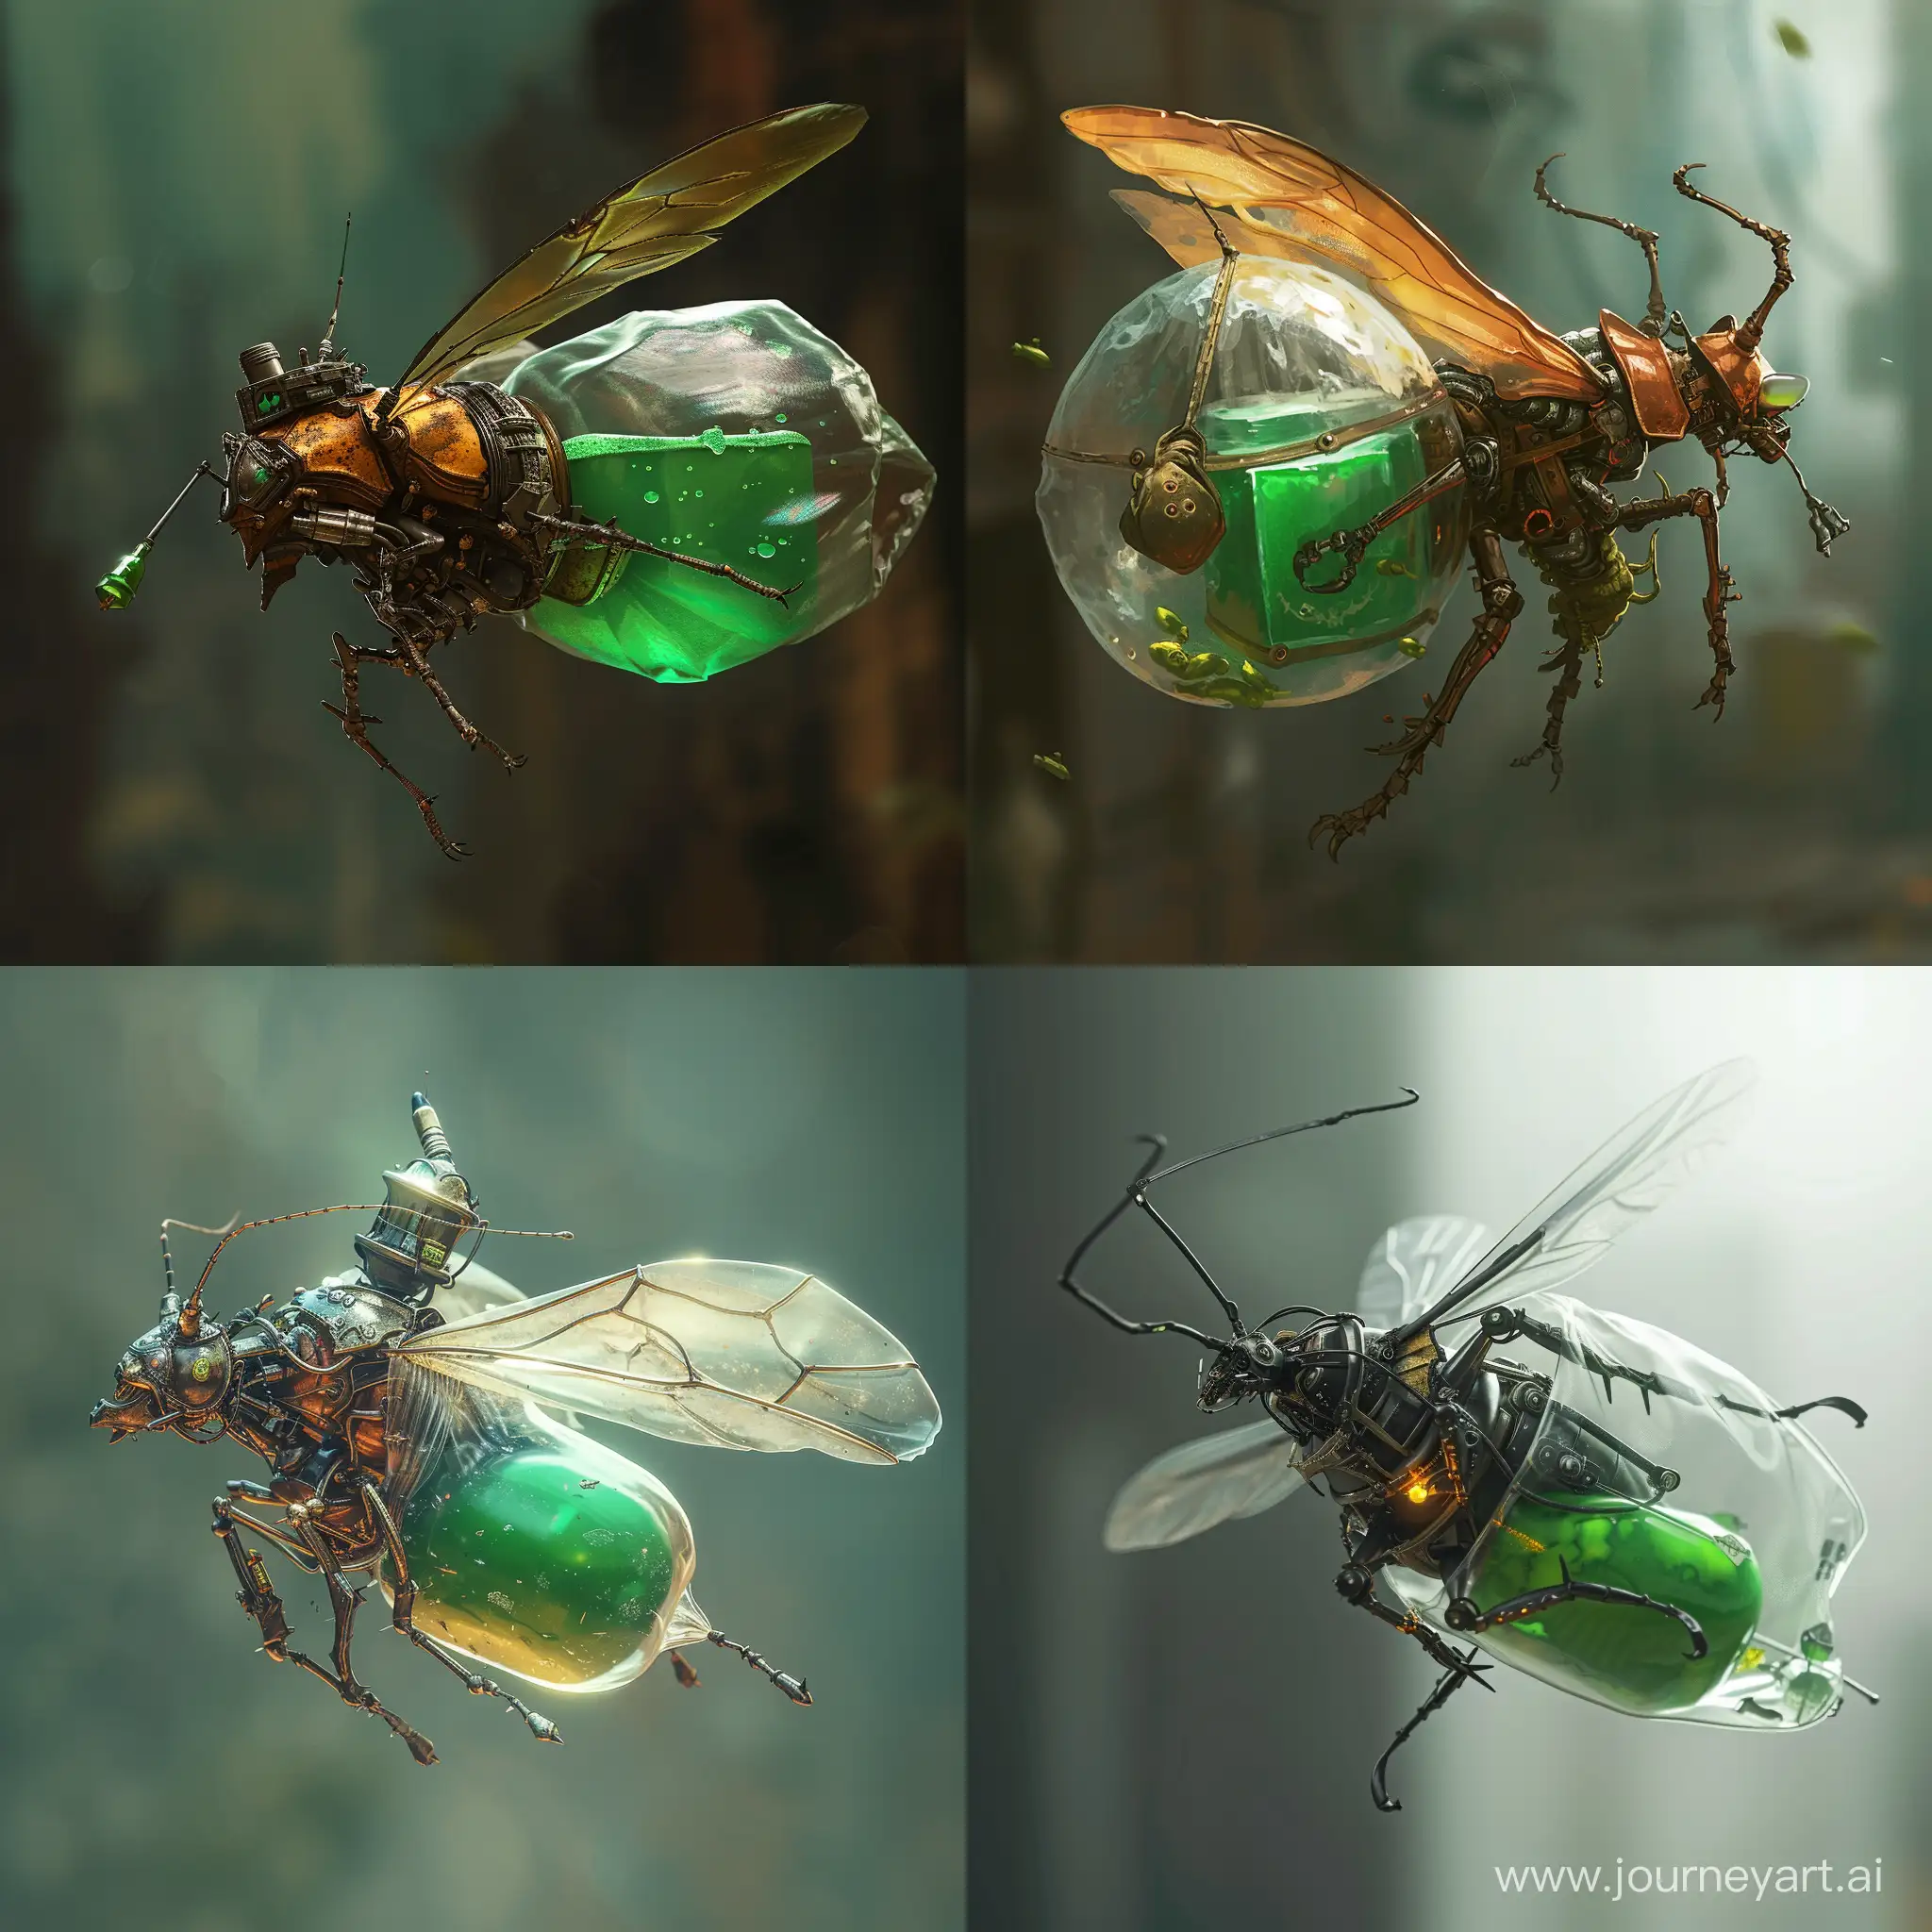 Insecto mecánico, que porta poción de sanación color verde en un gran saco transparente en su abdomen,el insecto es pequeño y se encuentra volando mientras lo que más se nota es dicho saco de estilo medieval de calabozos y dragones